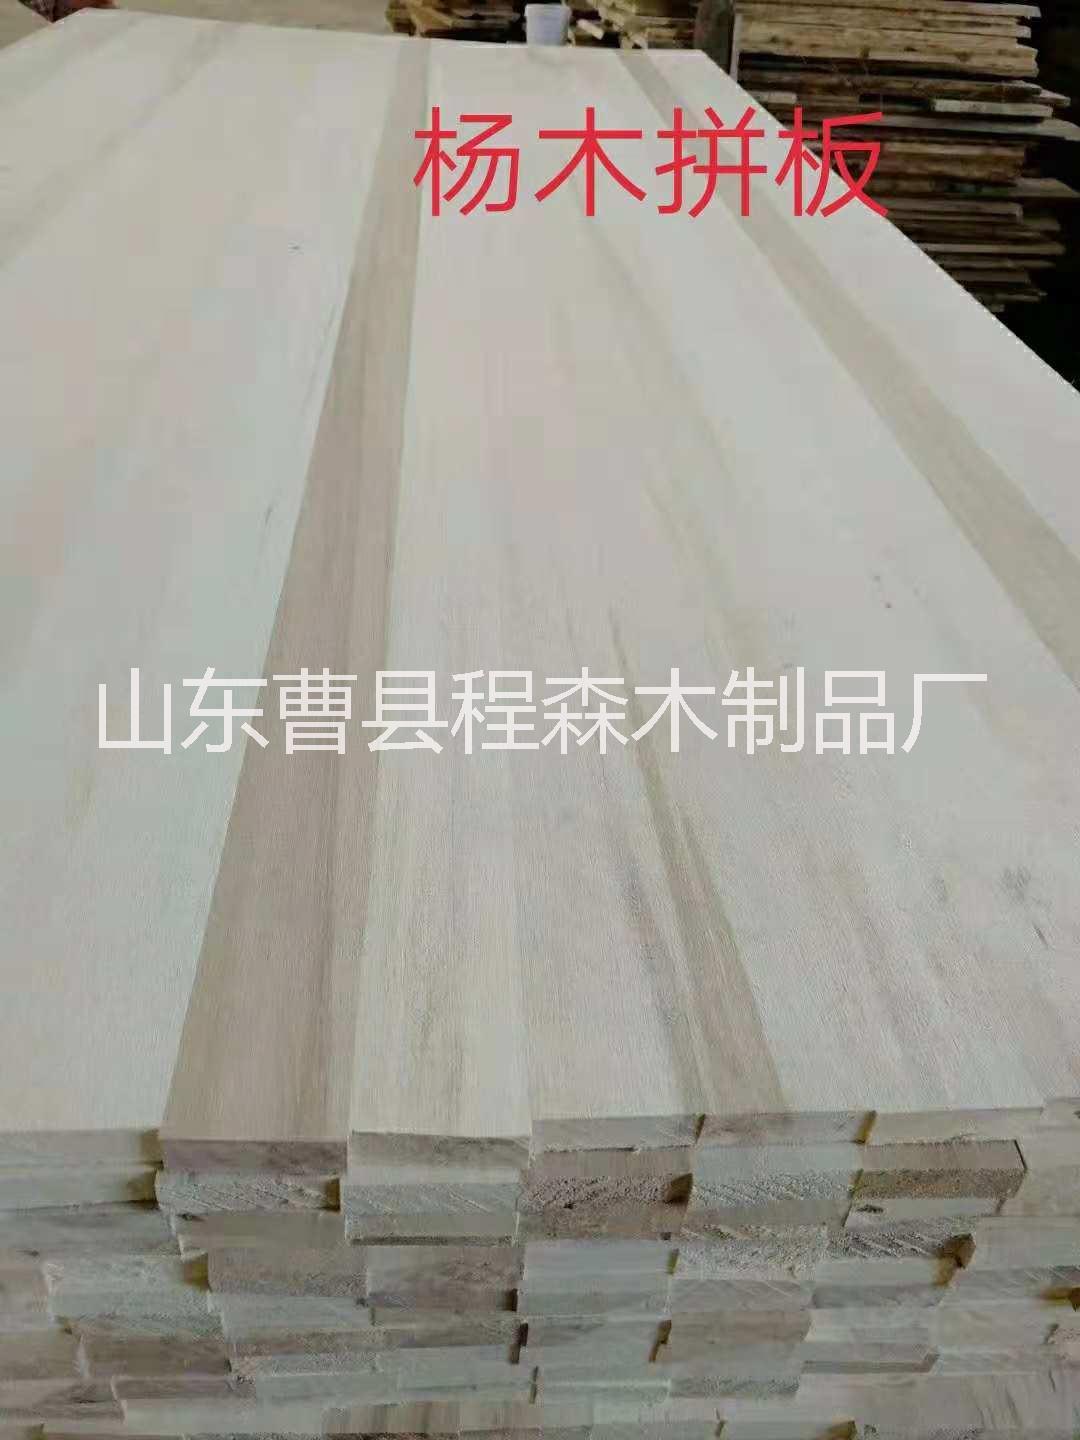 杨木拼板、四川杨木拼板生产厂家直销、四川杨木拼板批发价格，杨木拼板供应商报价